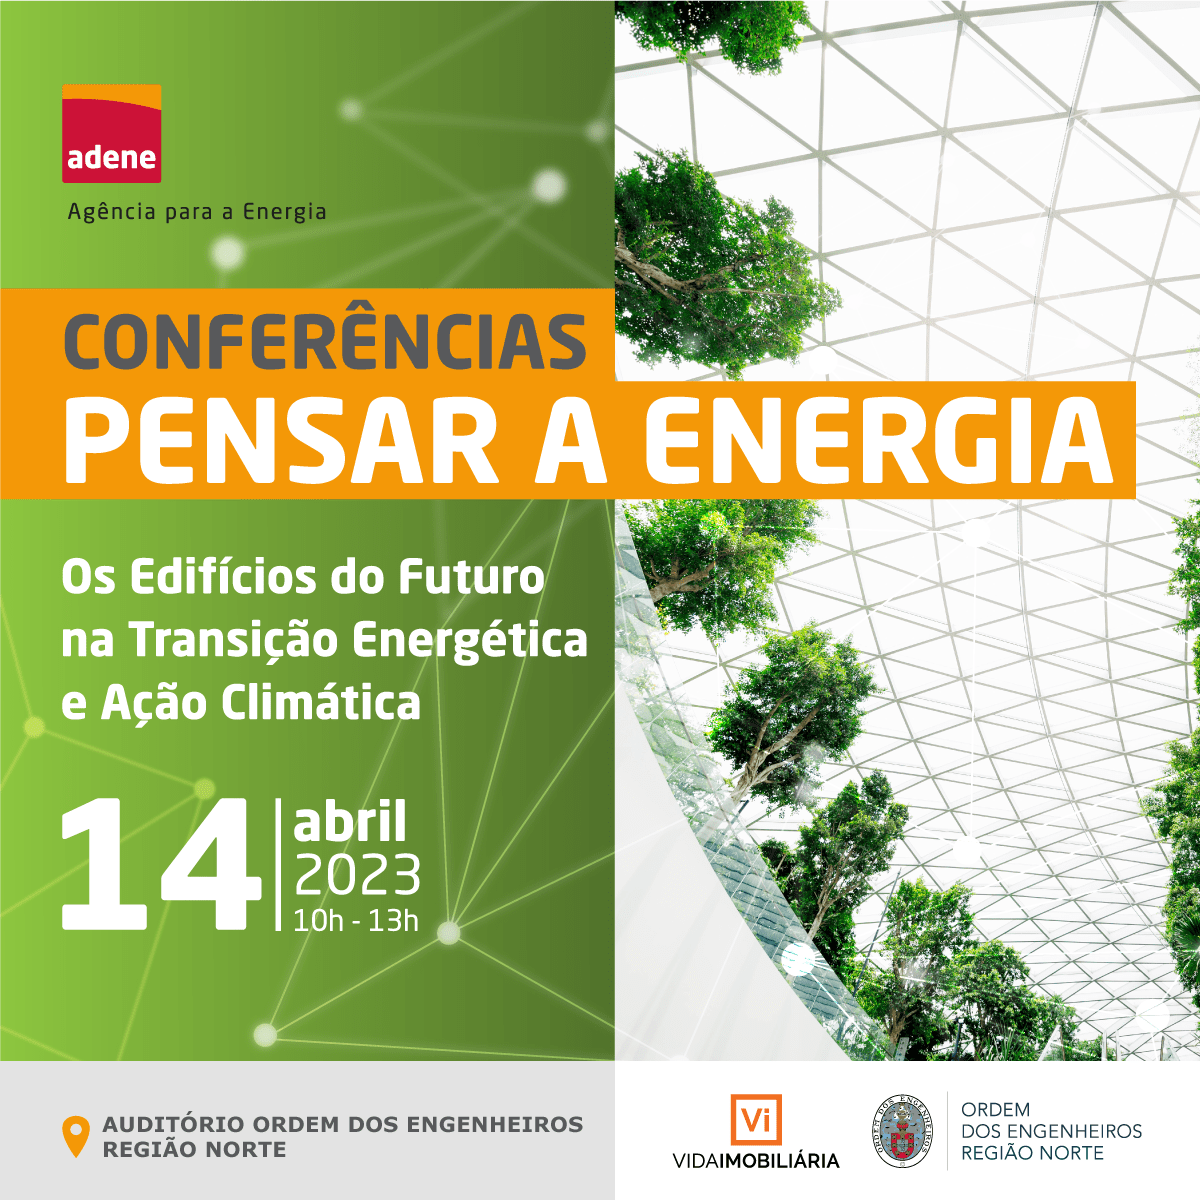 ADENE promove Conferência “Pensar a Energia” sobre a Nova Diretiva do Desempenho Energético de Edifícios